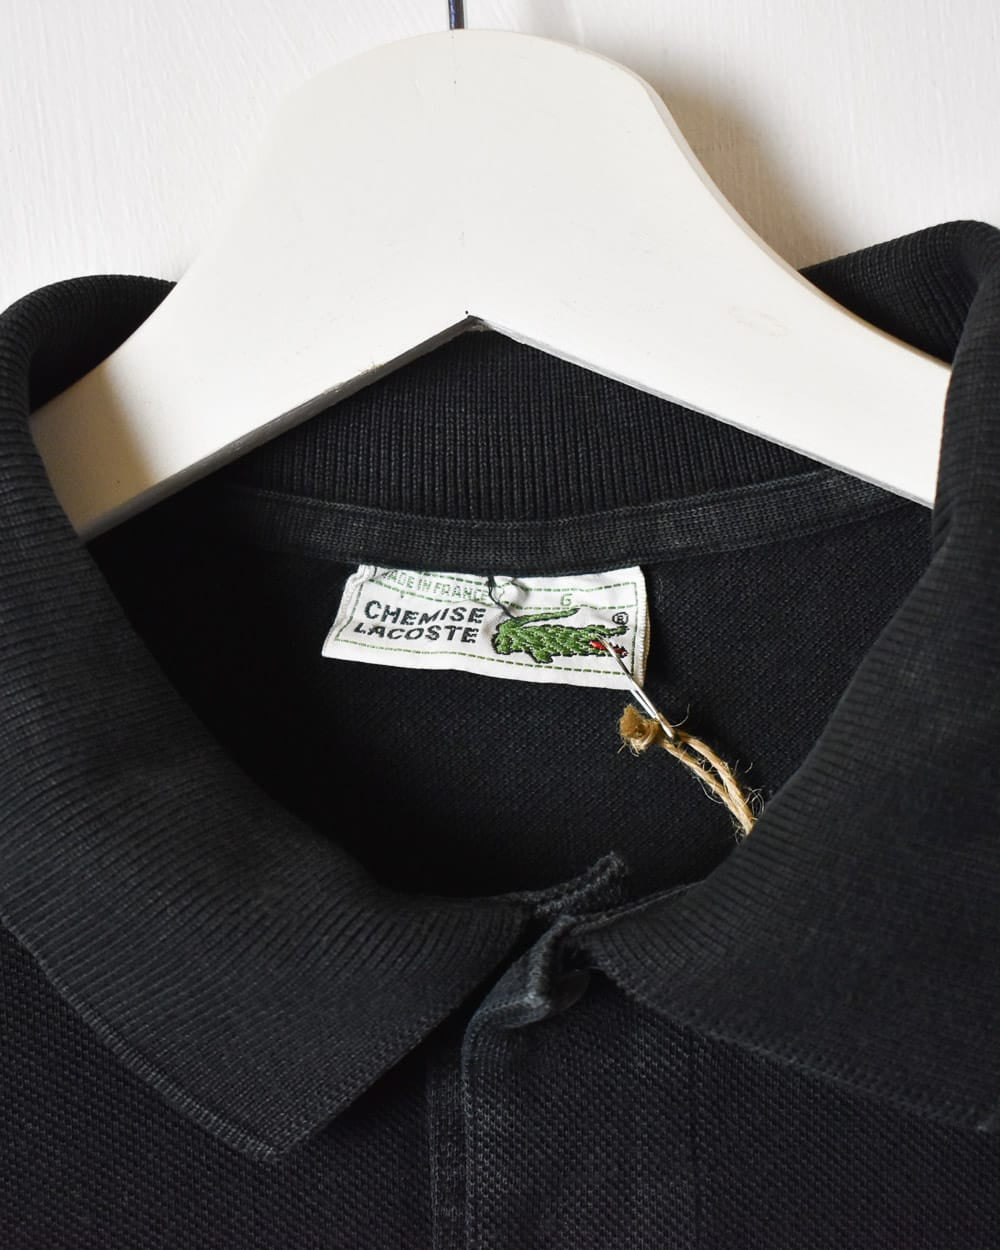 Black Chemise Lacoste Long Sleeved Polo Shirt - Medium